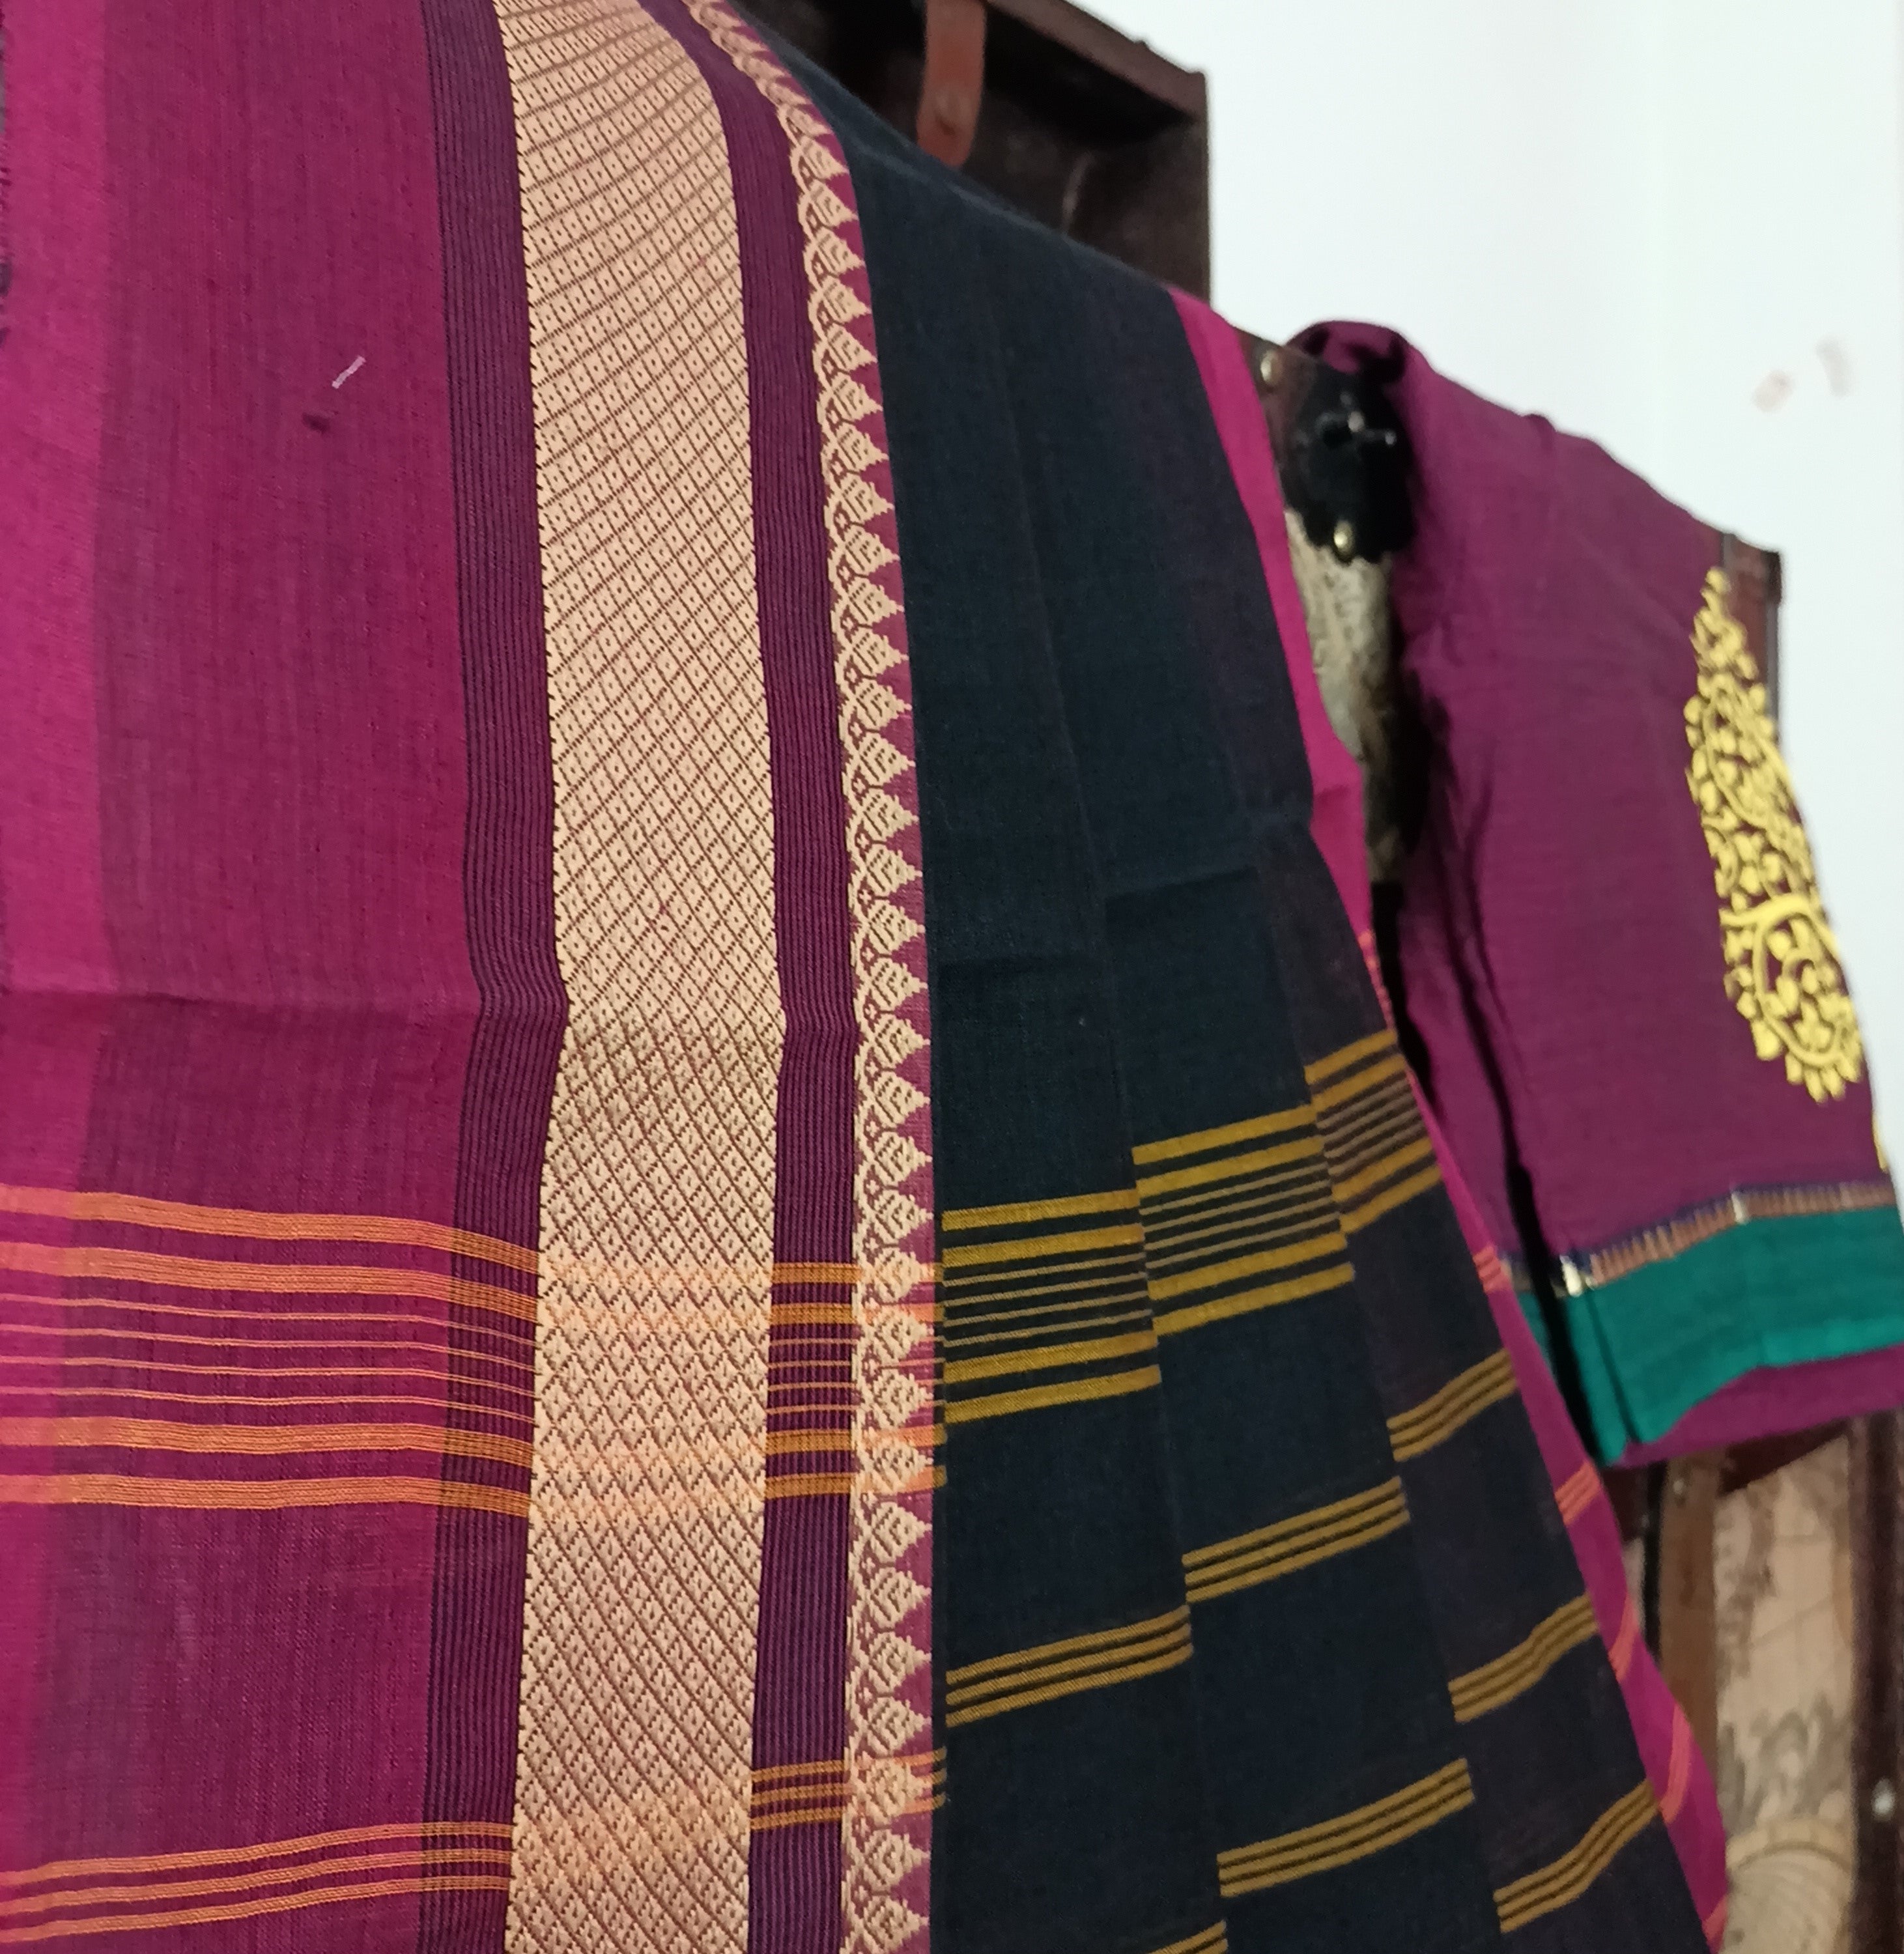 Umbara designs - saree blouse combo for working women